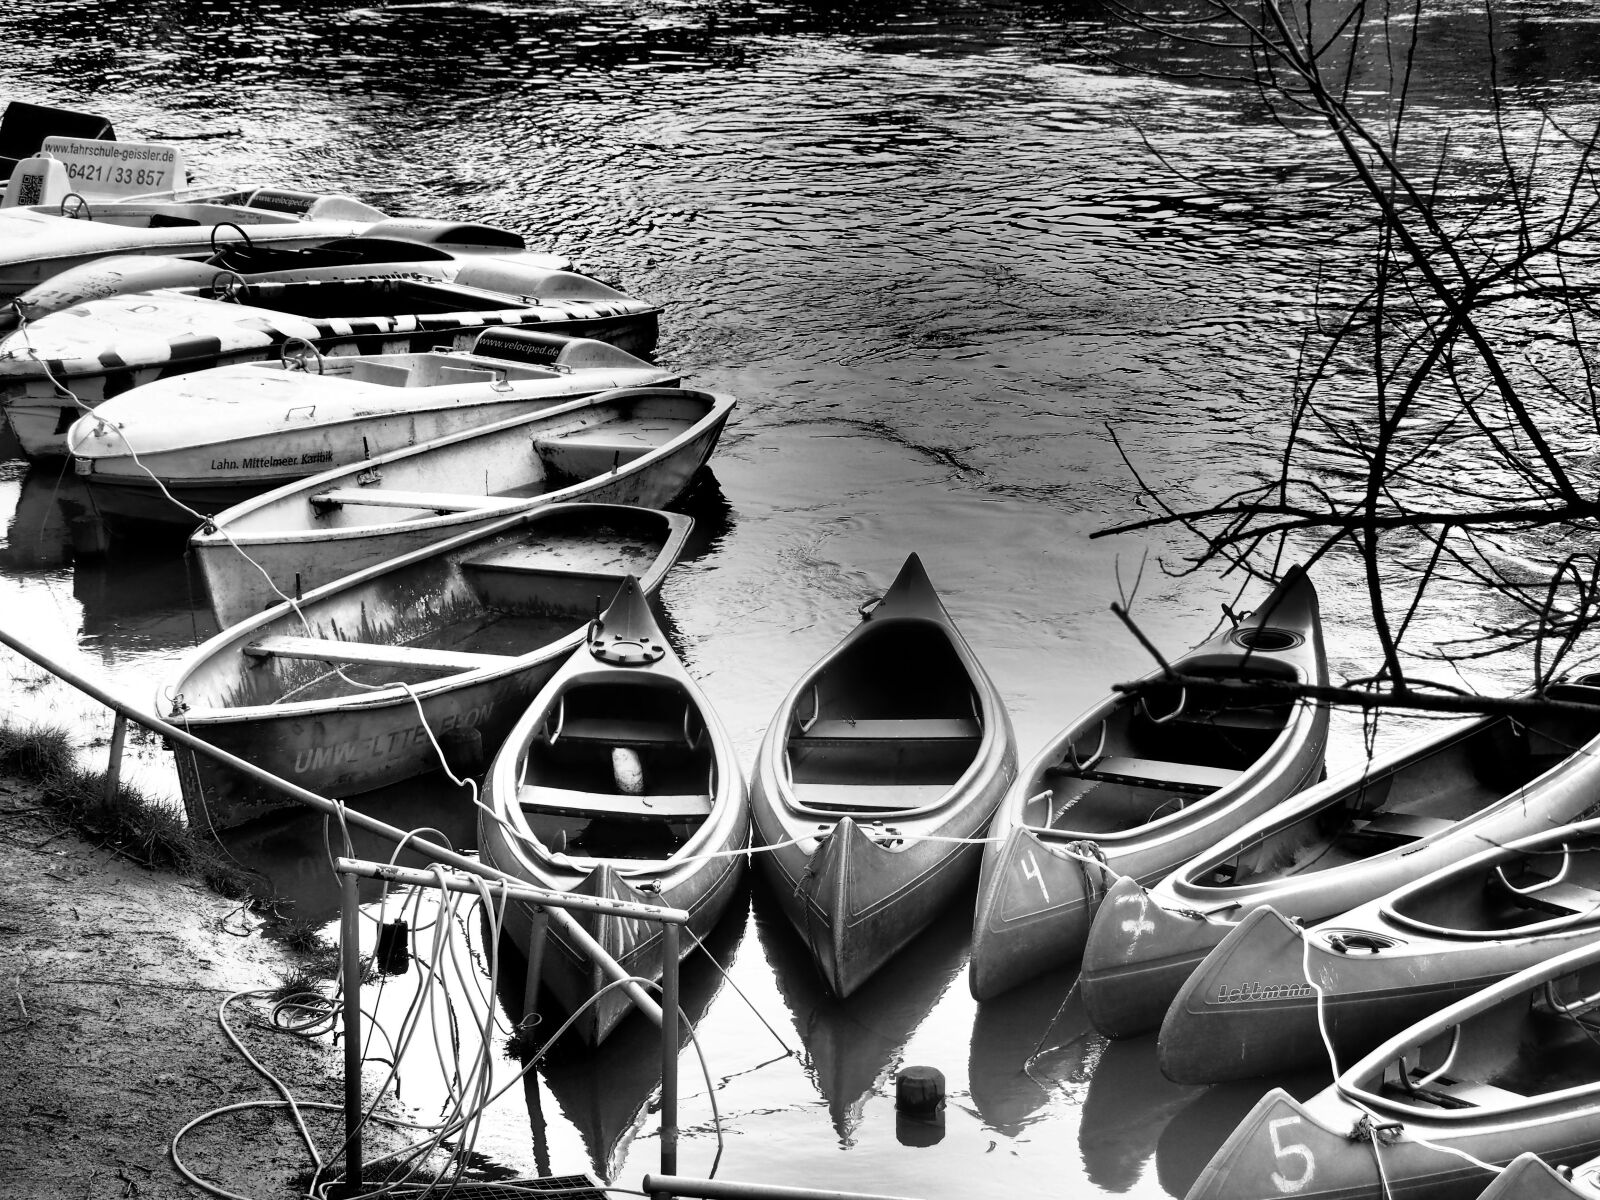 Panasonic Lumix G Vario 45-200mm F4-5.6 OIS sample photo. Boats, canoeing, paddle photography